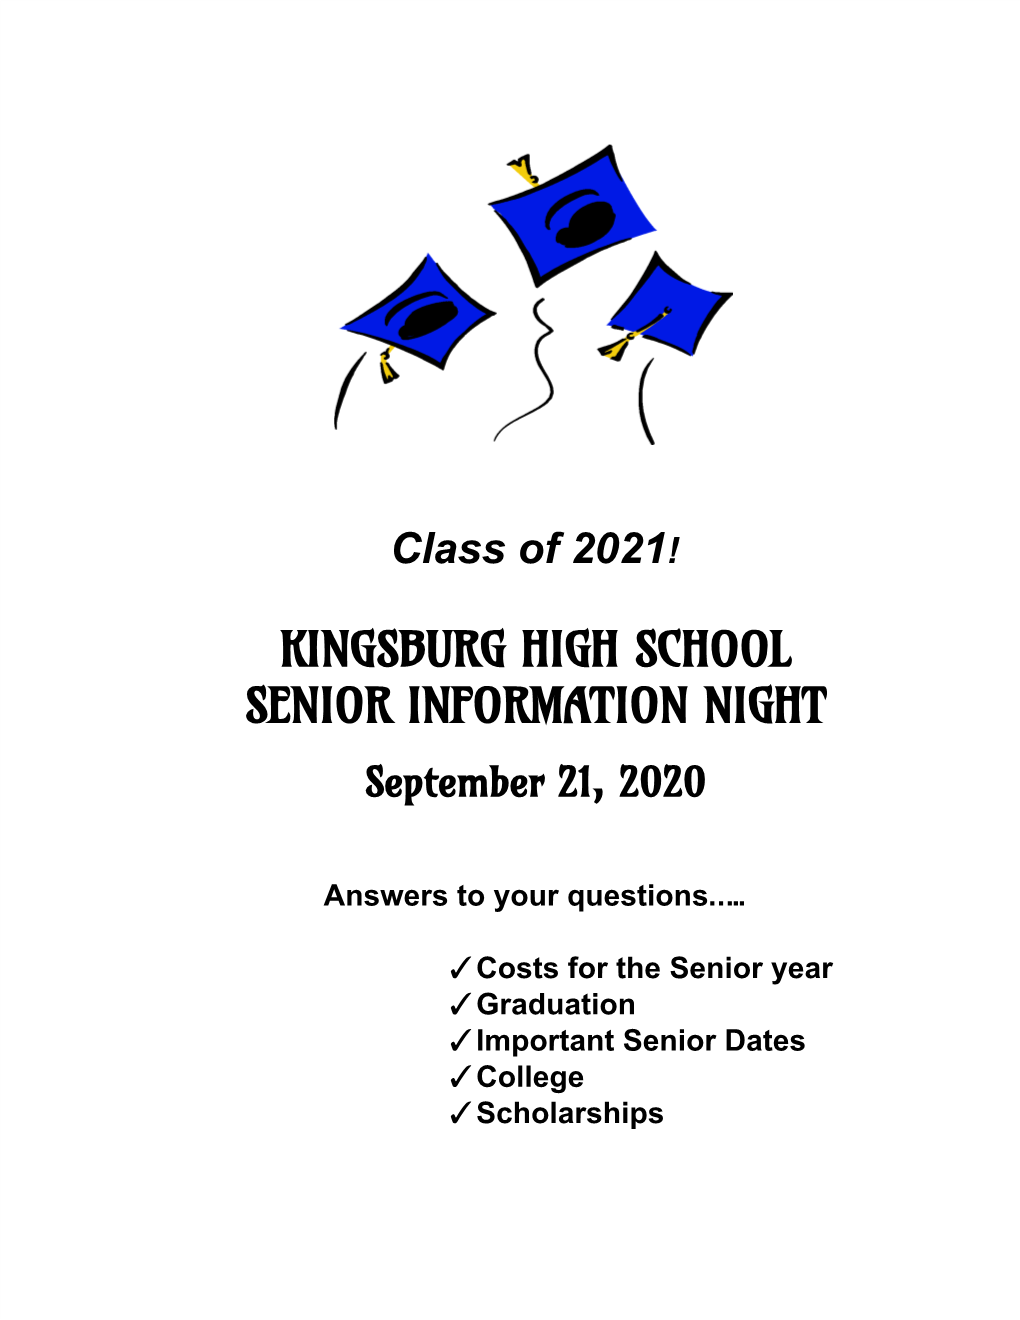 Kingsburg High School Senior Information Night